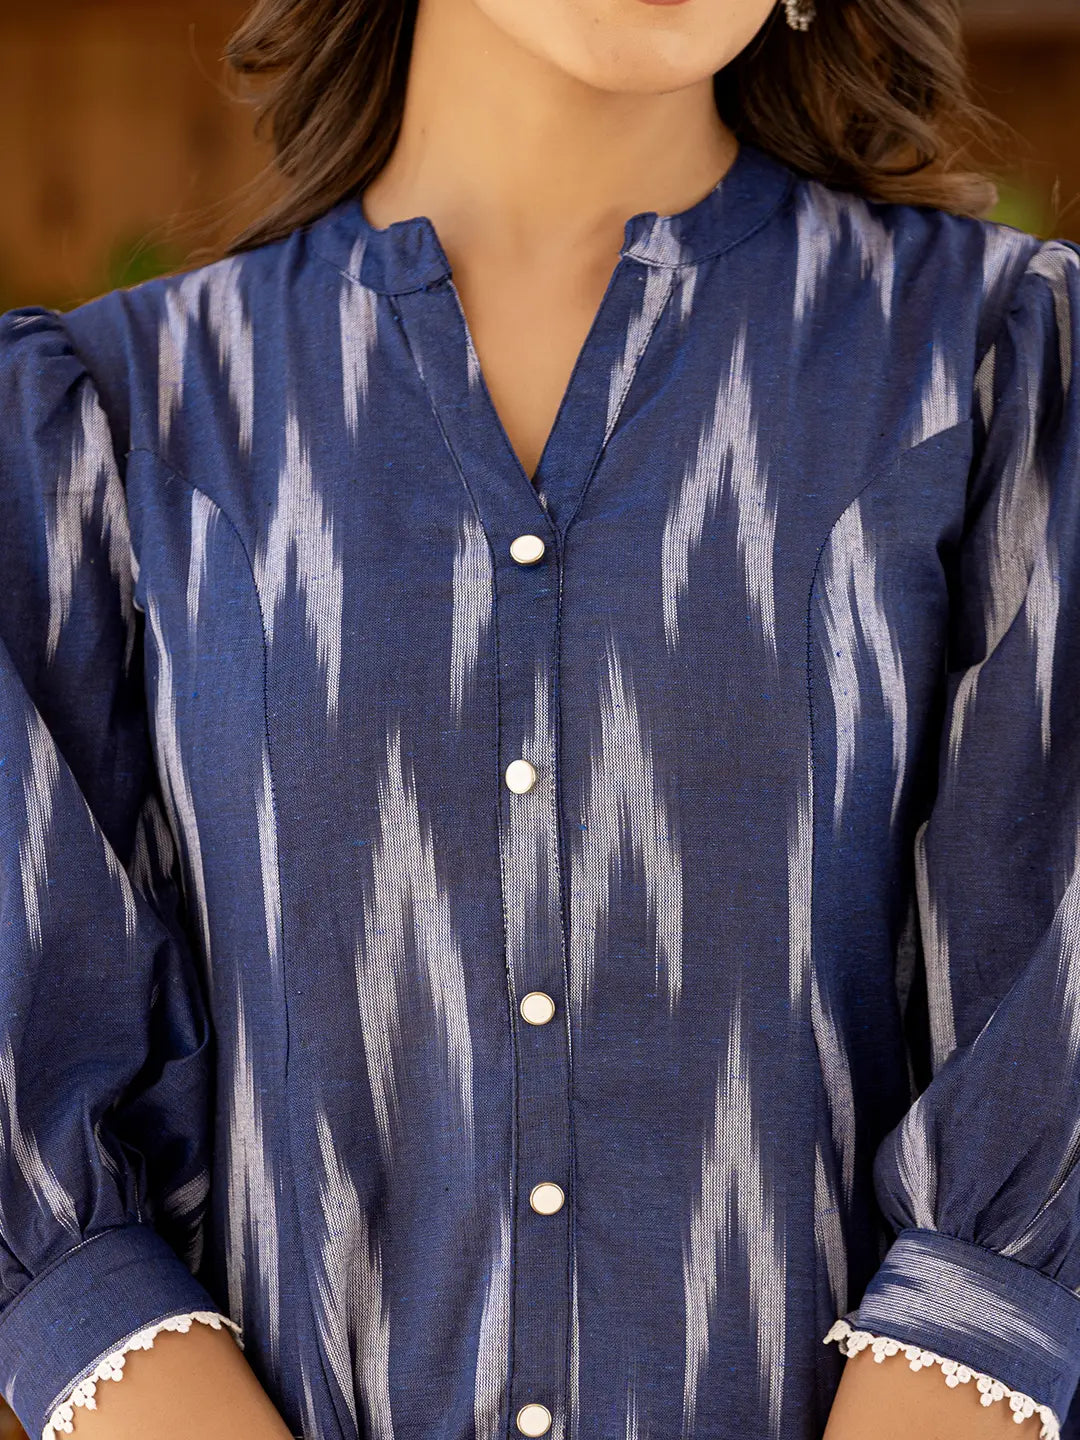 Cotton Blue Ikat Print Puffed Sleeve Tops-Yufta Store-1524TOPBLS